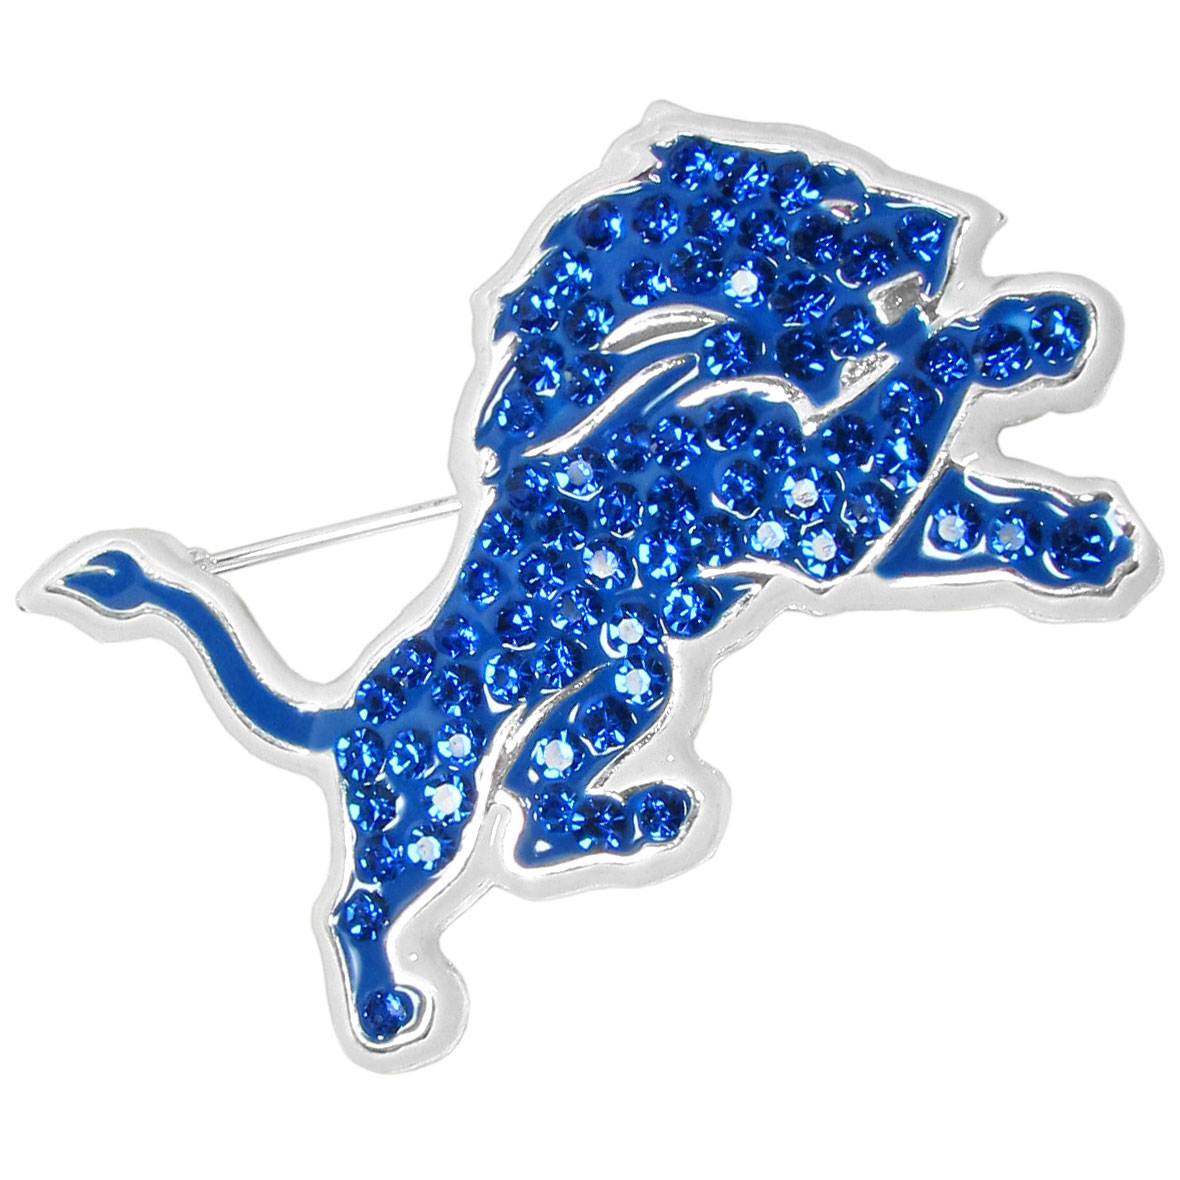 Detroit Lions Crystal Pin Fanhood Gear